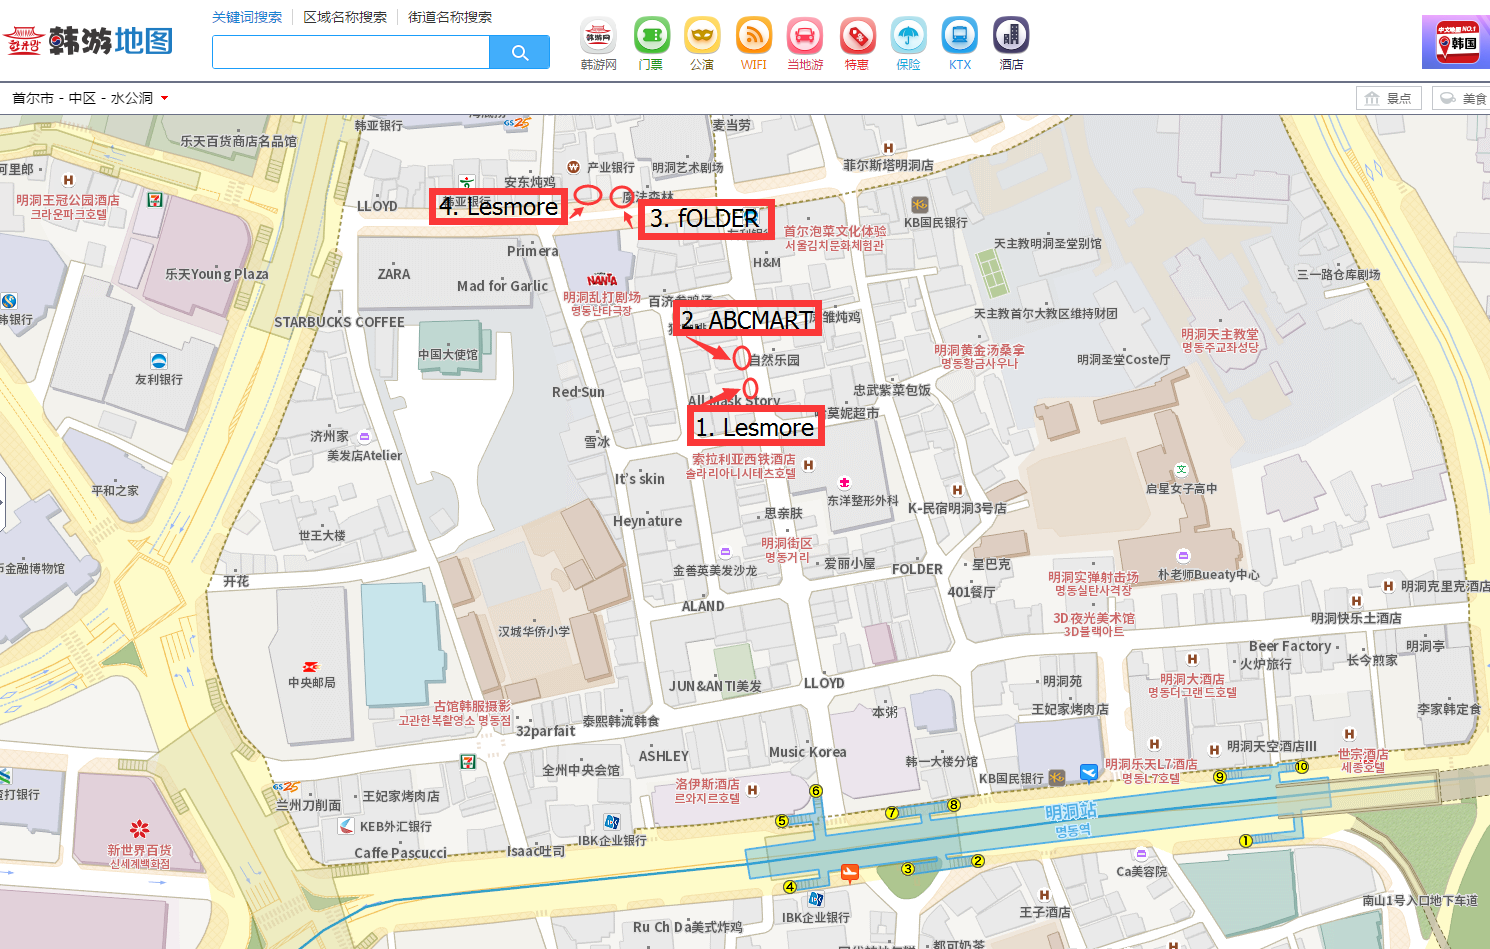 韩游网实景地图显示1和2 (两家店是隔壁)的店面如下